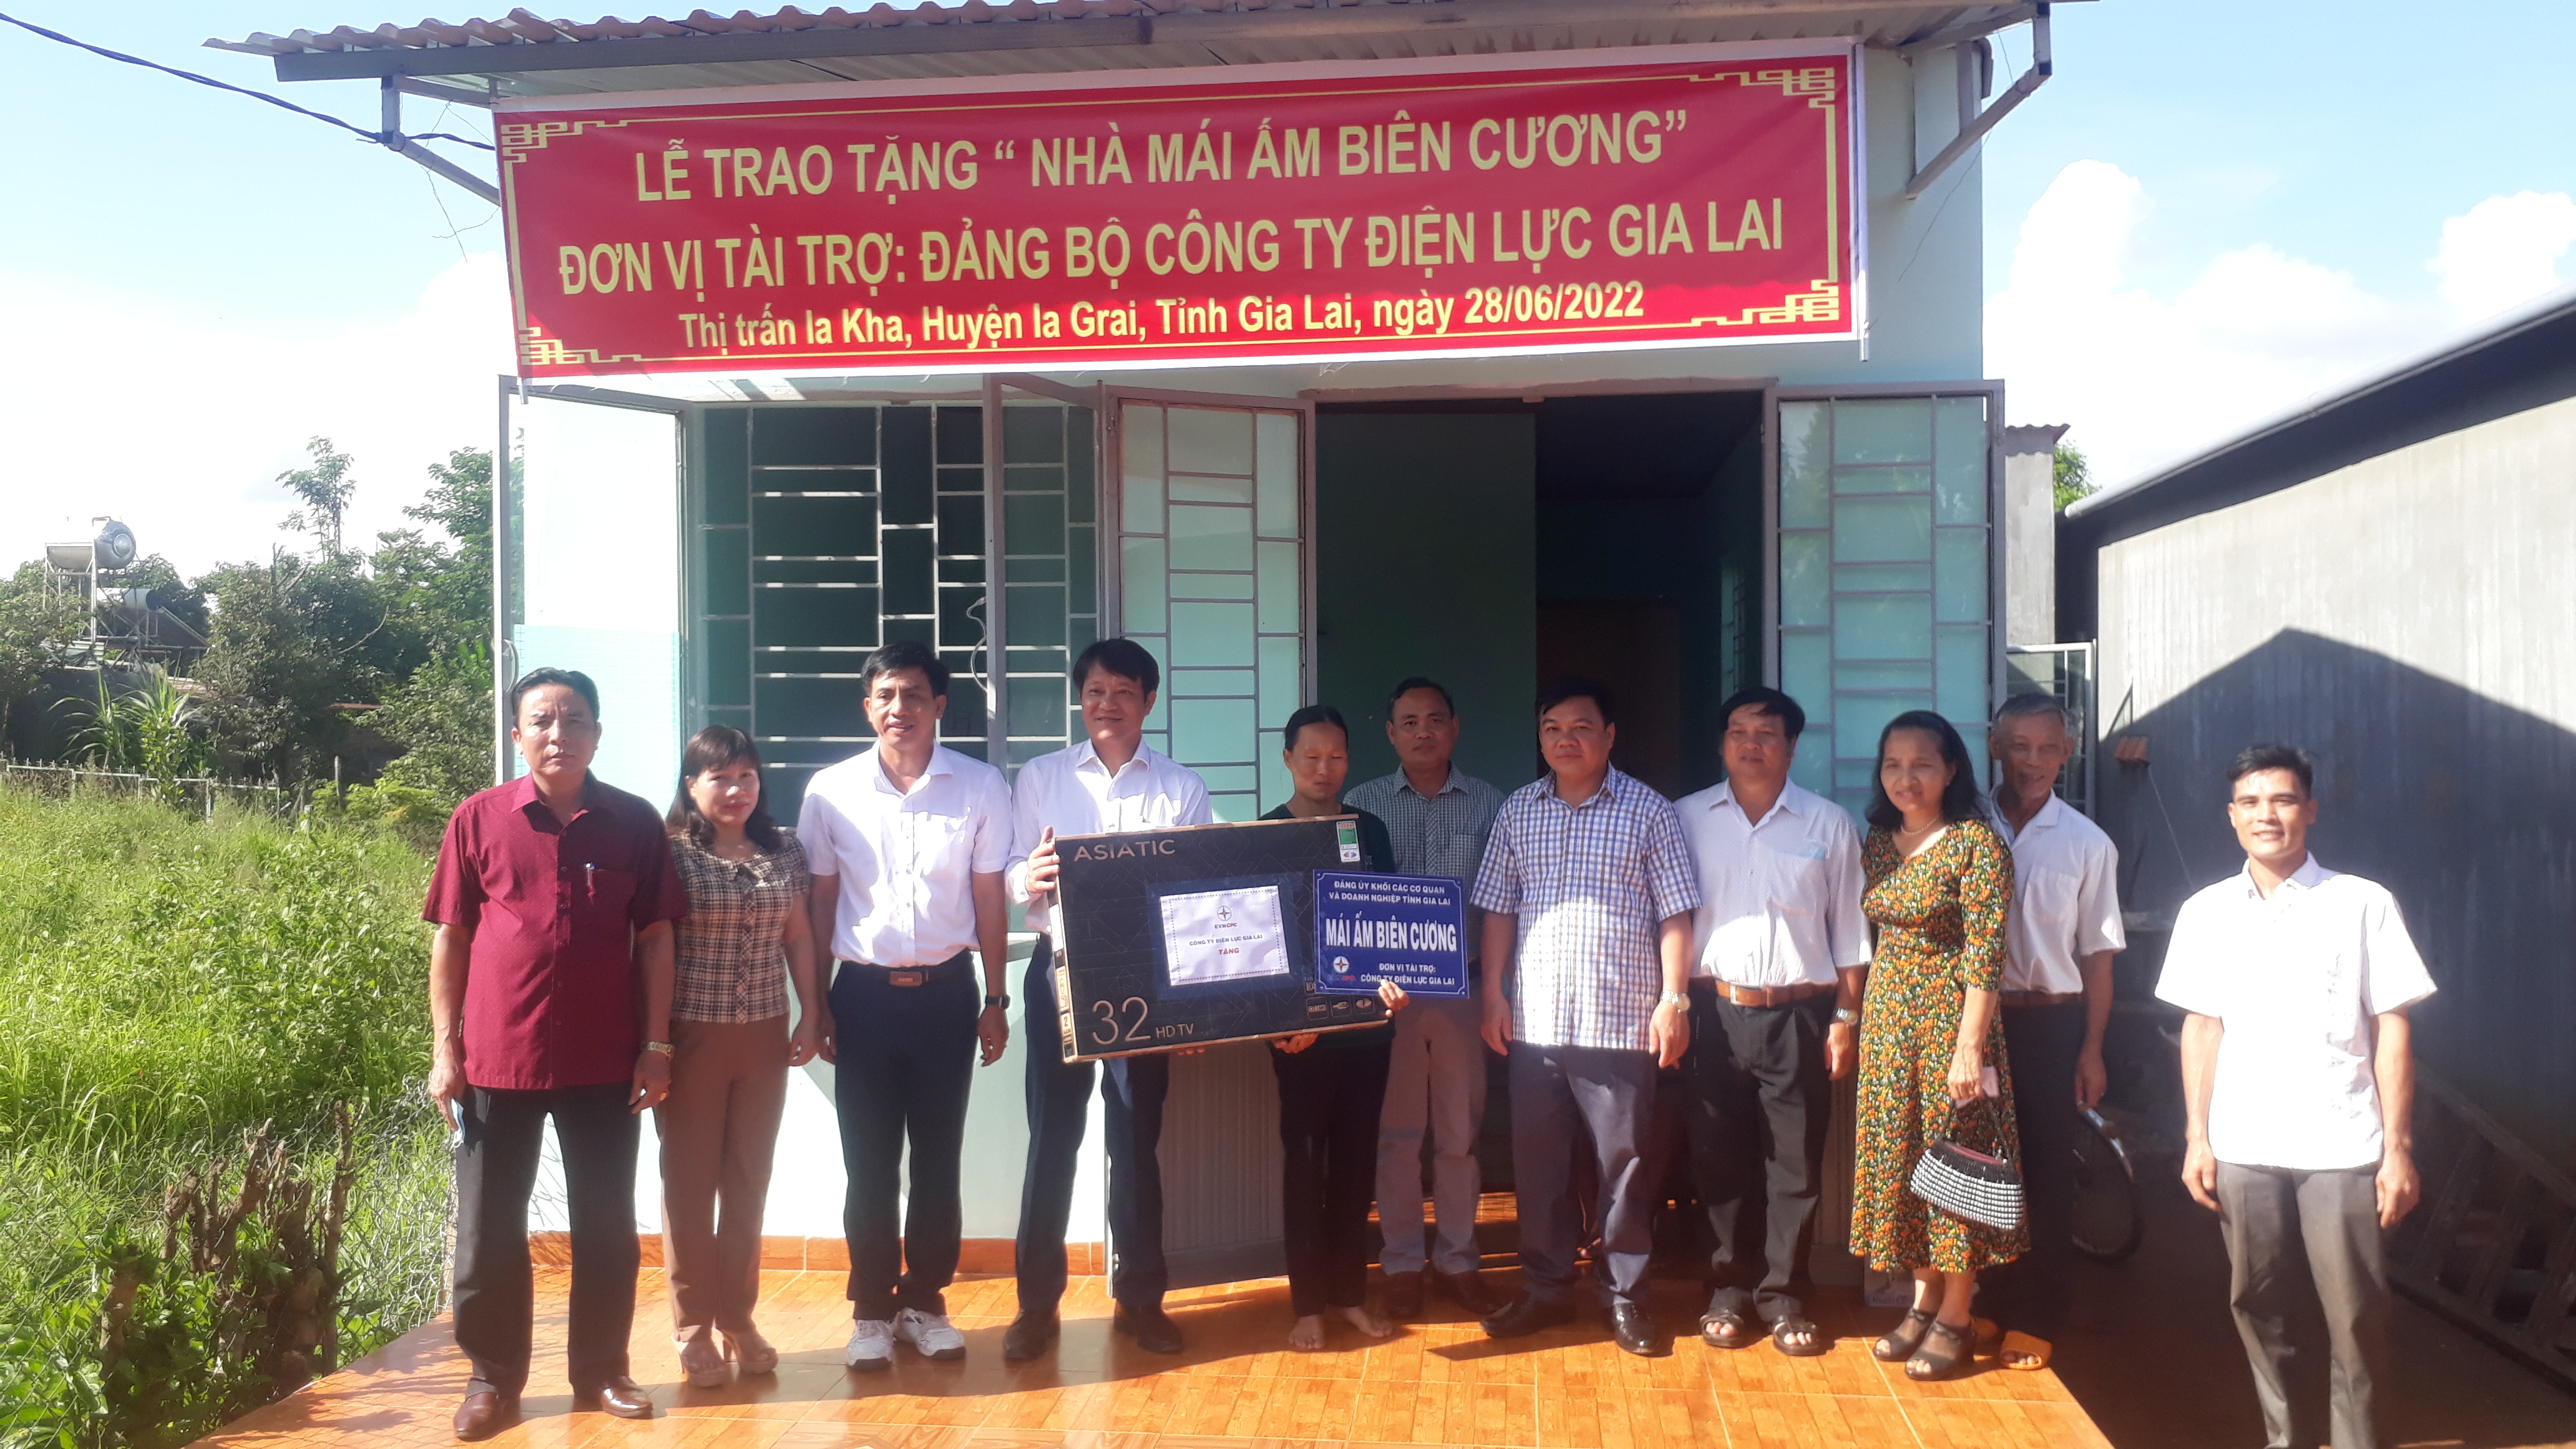 Article Đảng bộ Công ty Điện lực Gia Lai trao tặng 2 nhà “mái ấm biên cương” cho hộ nghèo ở huyện Ia Grai.